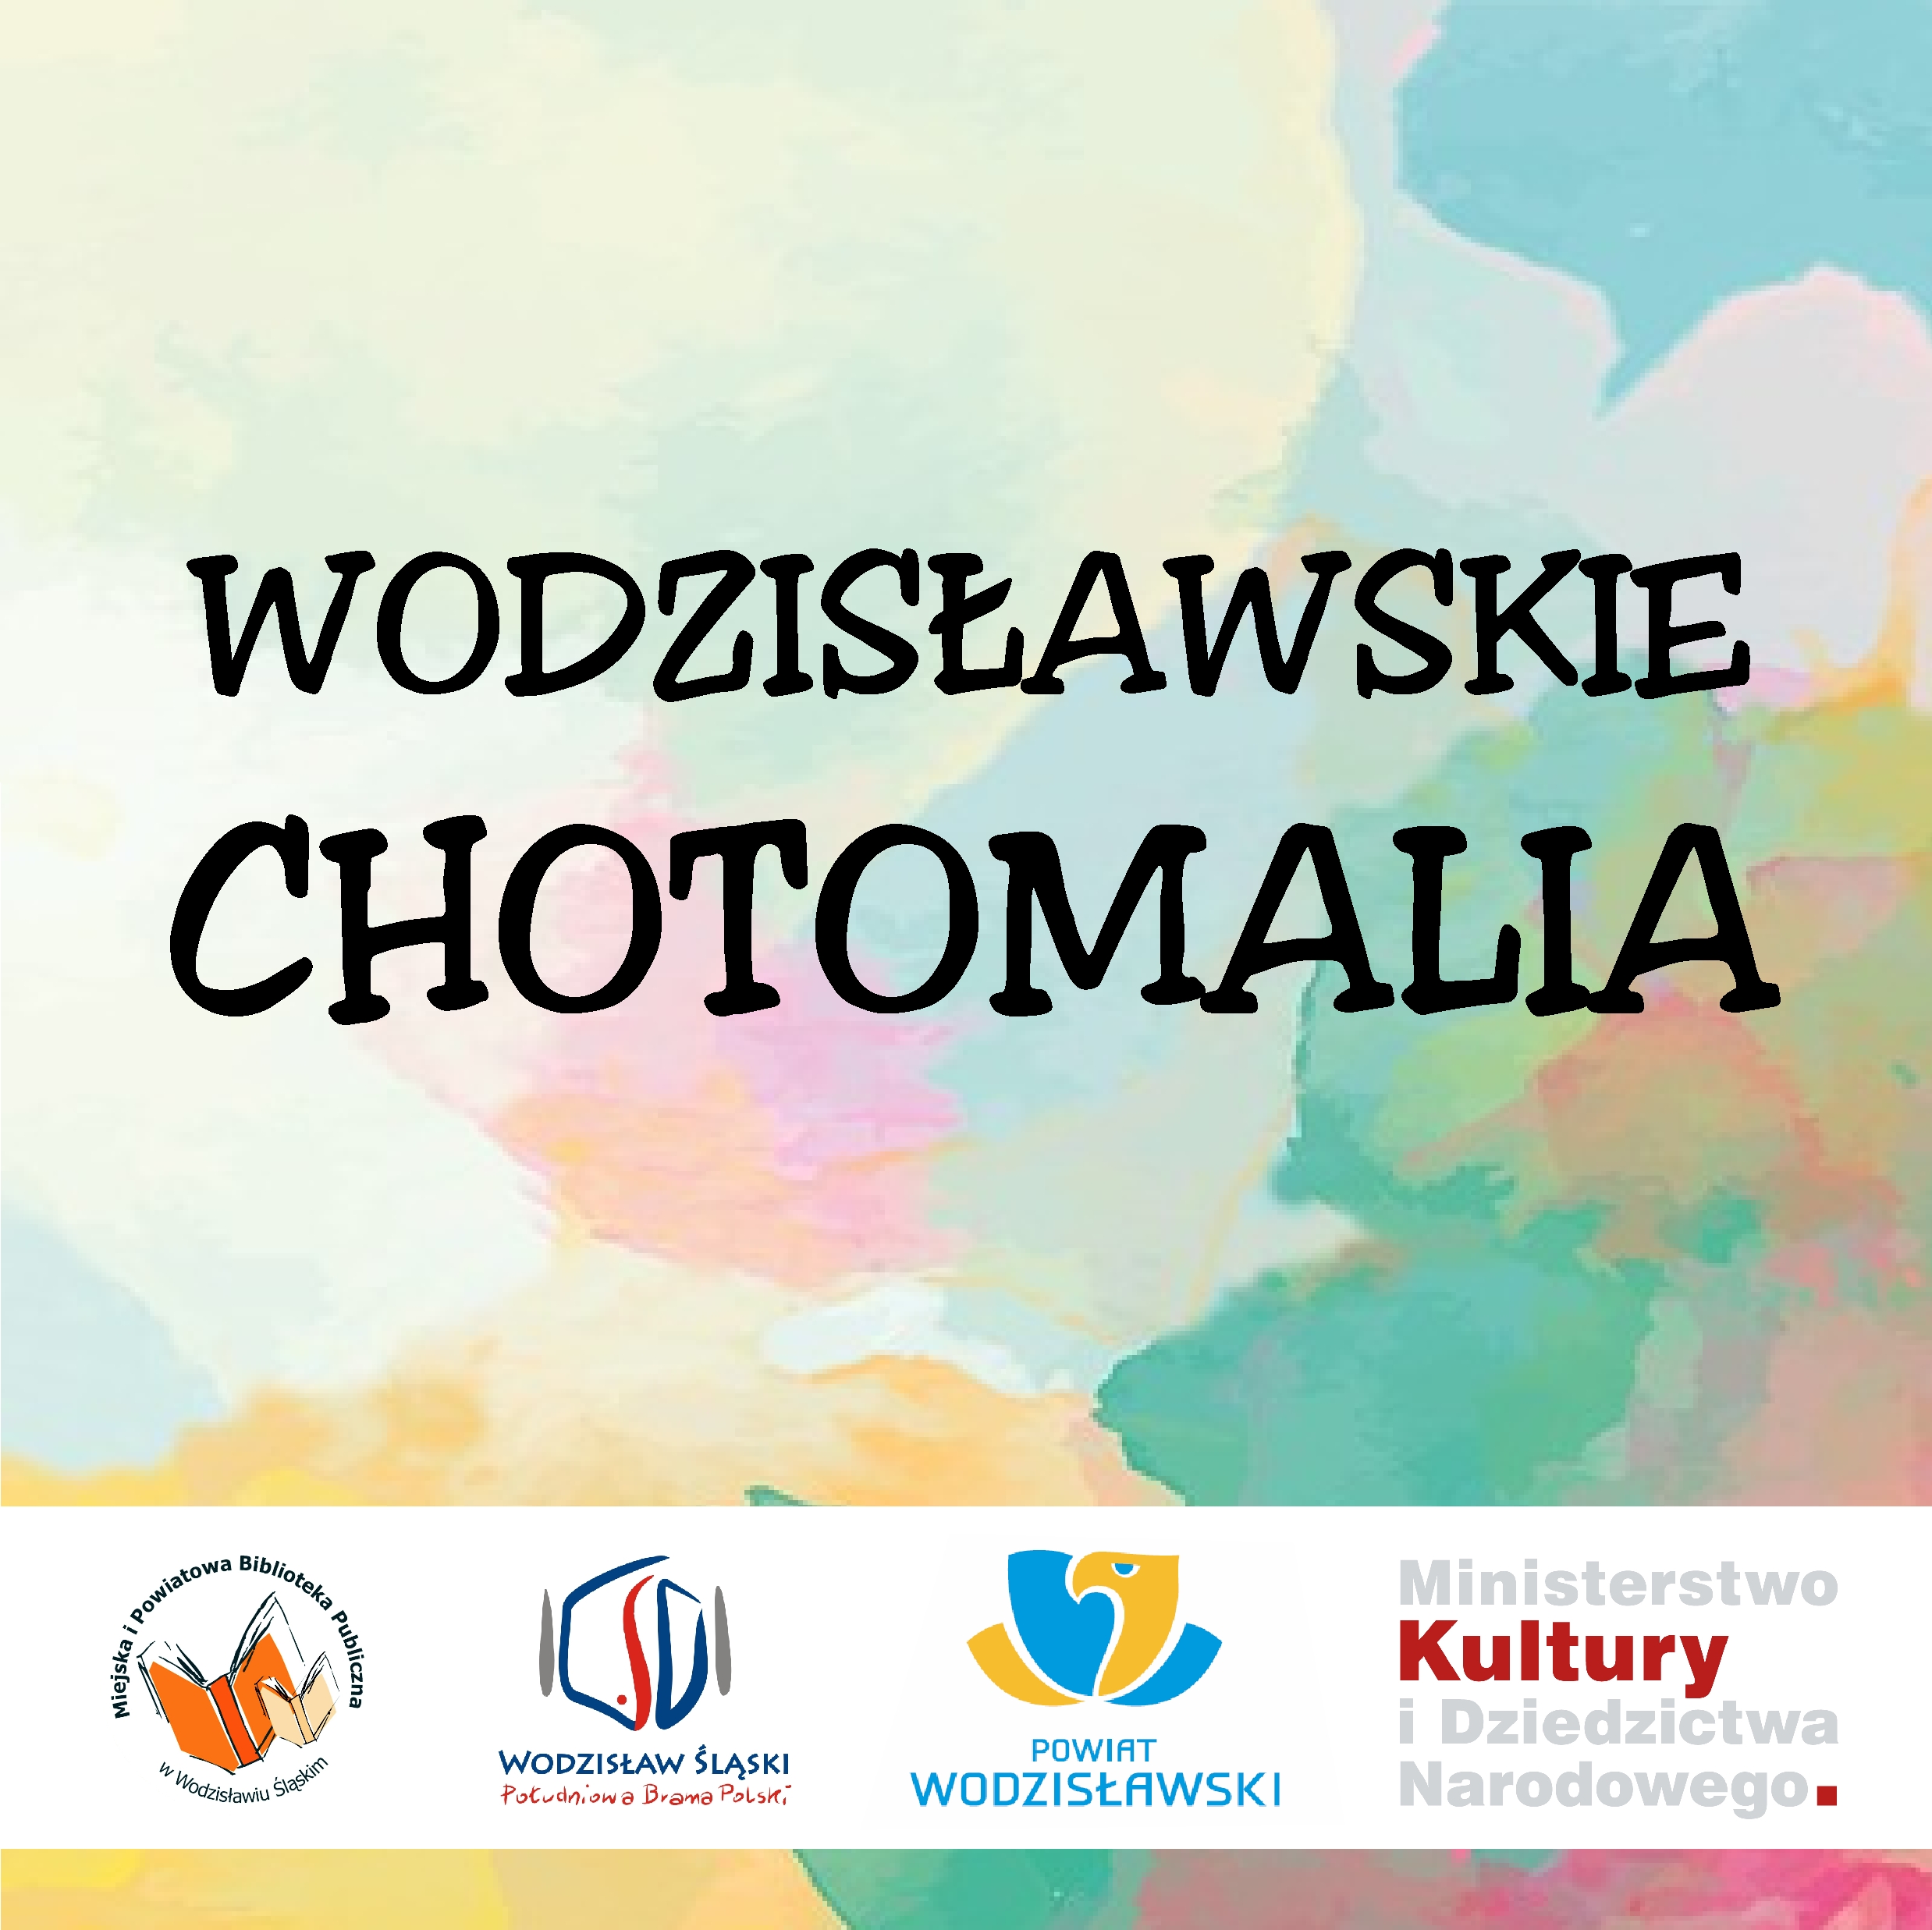 Wodzisławskie Chotomalia